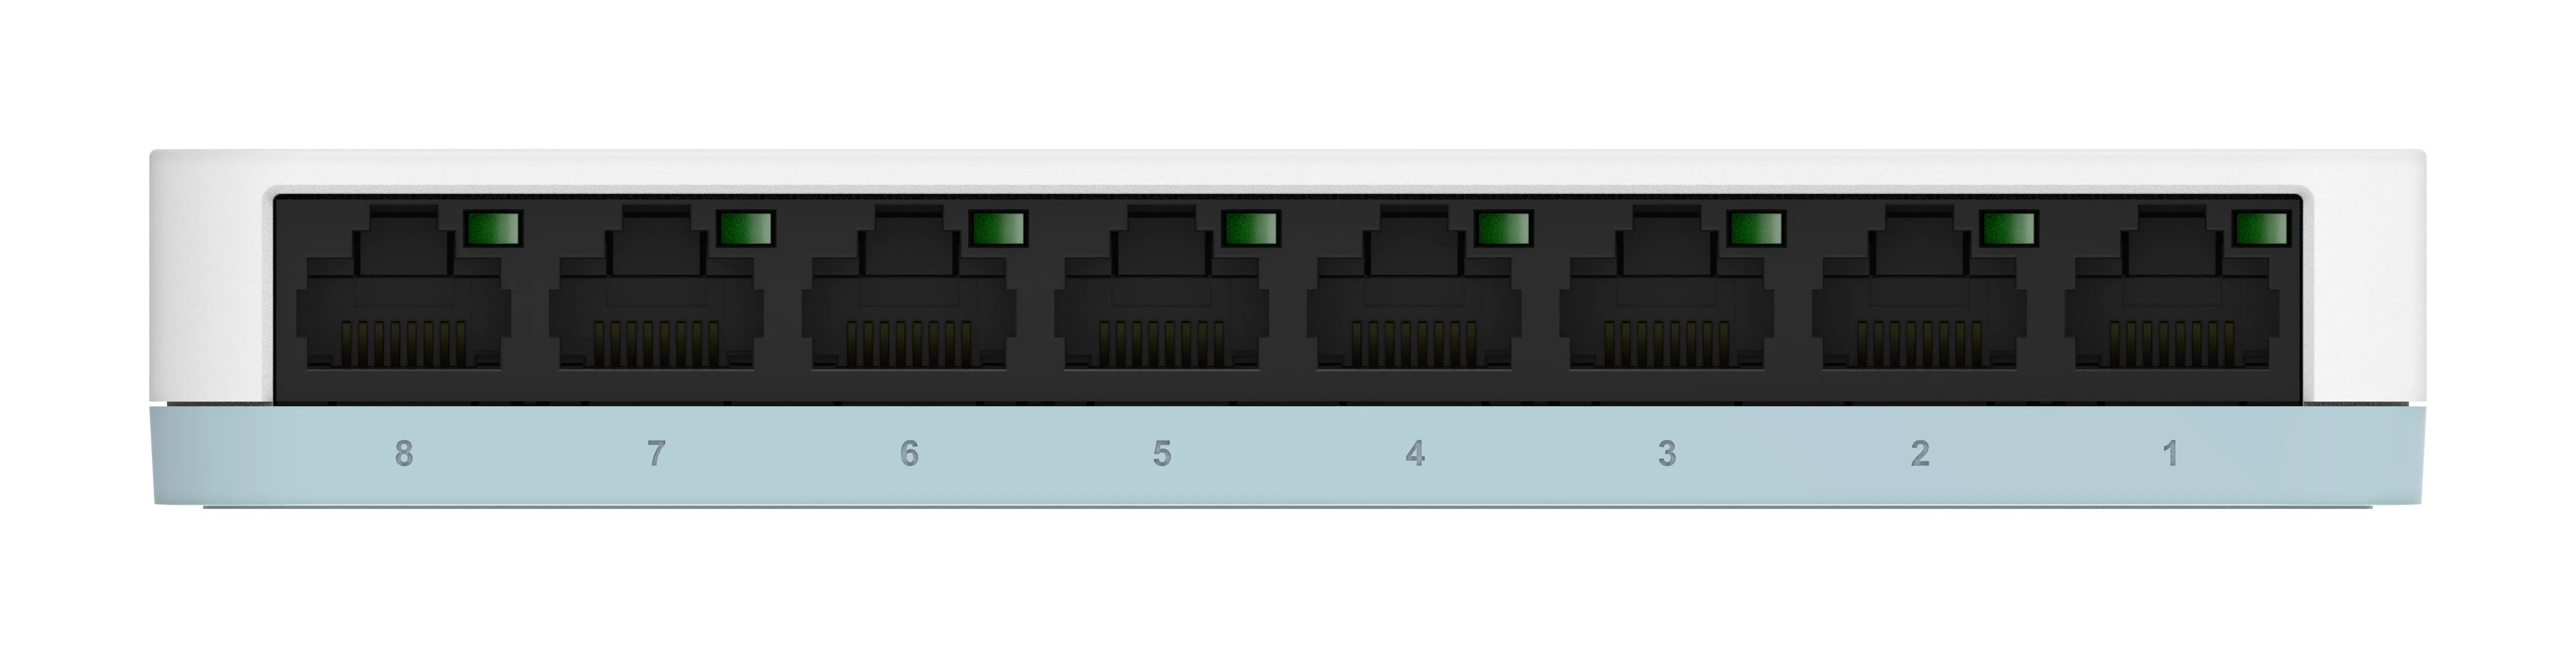 Vente D-LINK Switch 8 Ports 10/100/1000 MBPS Non Rackable D-Link au meilleur prix - visuel 8